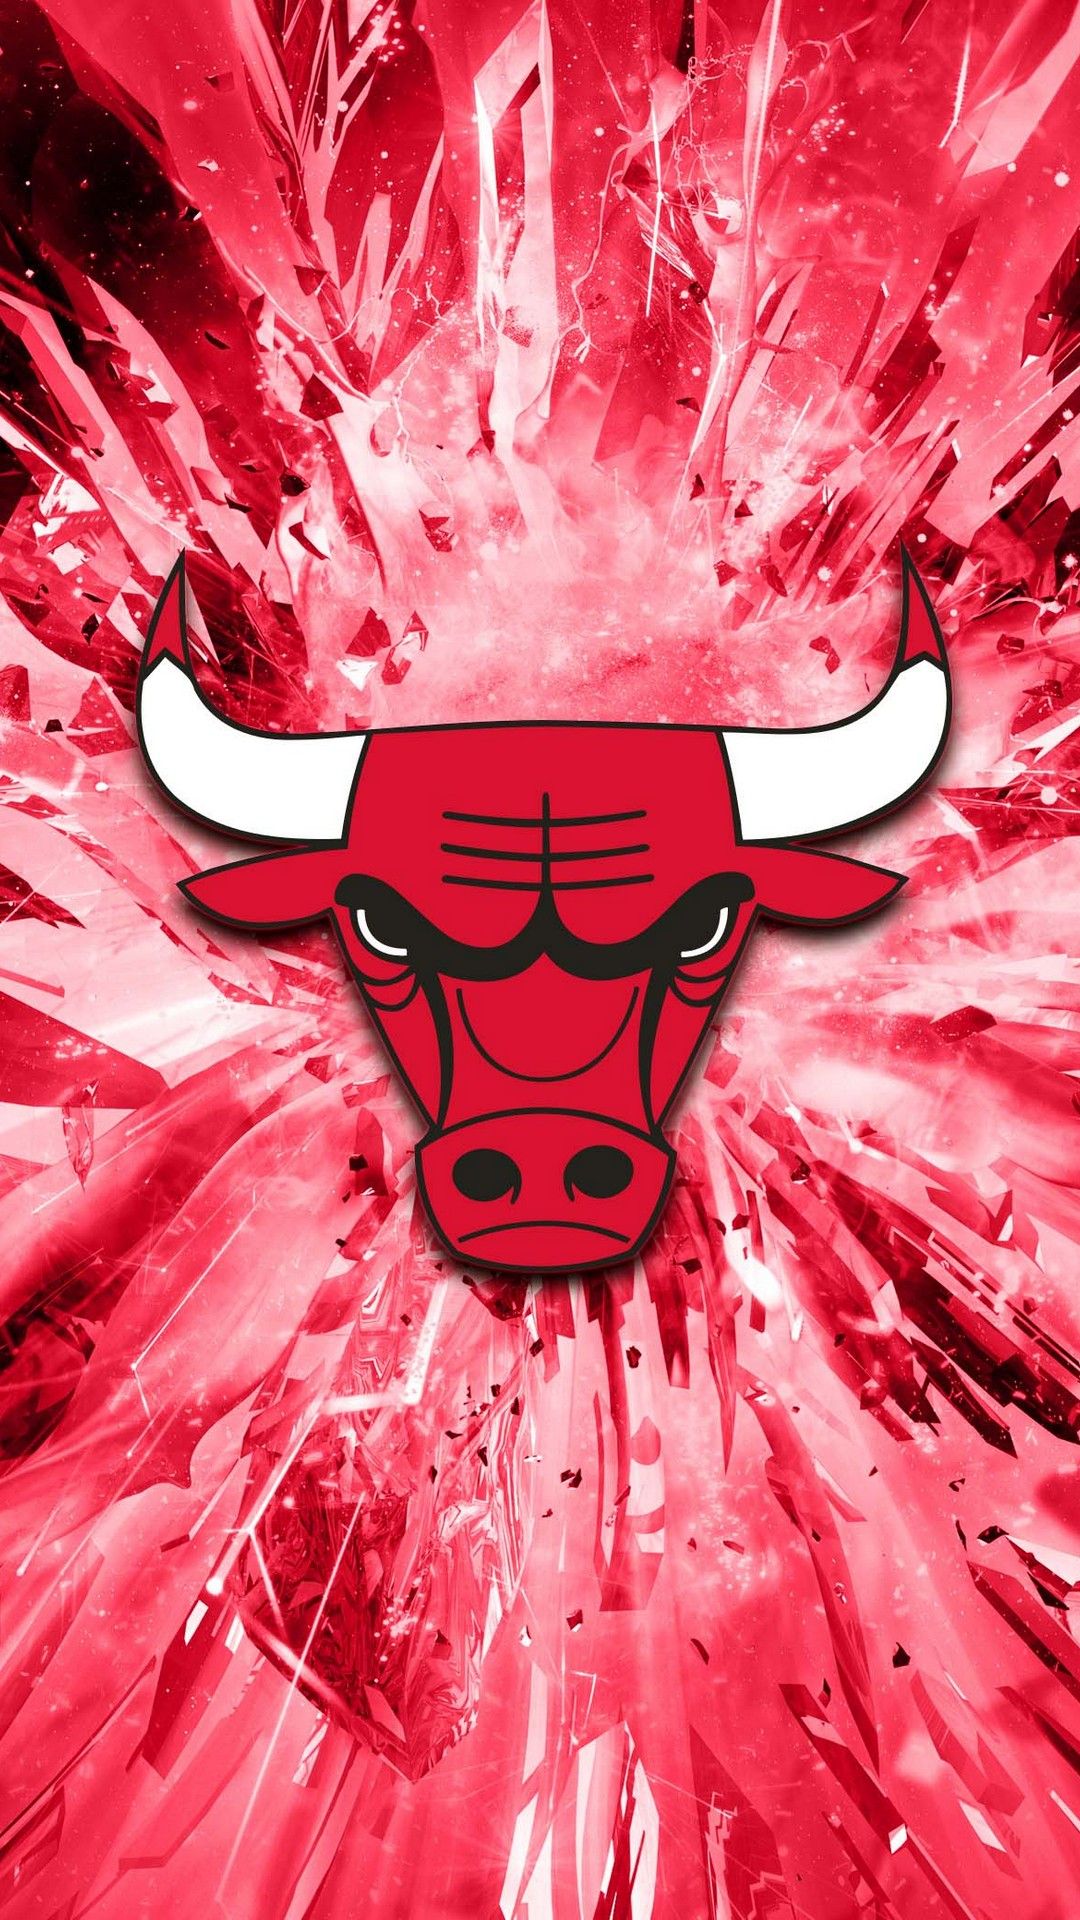 iPhone Wallpaper HD Chicago Bulls Basketball Wallpaper